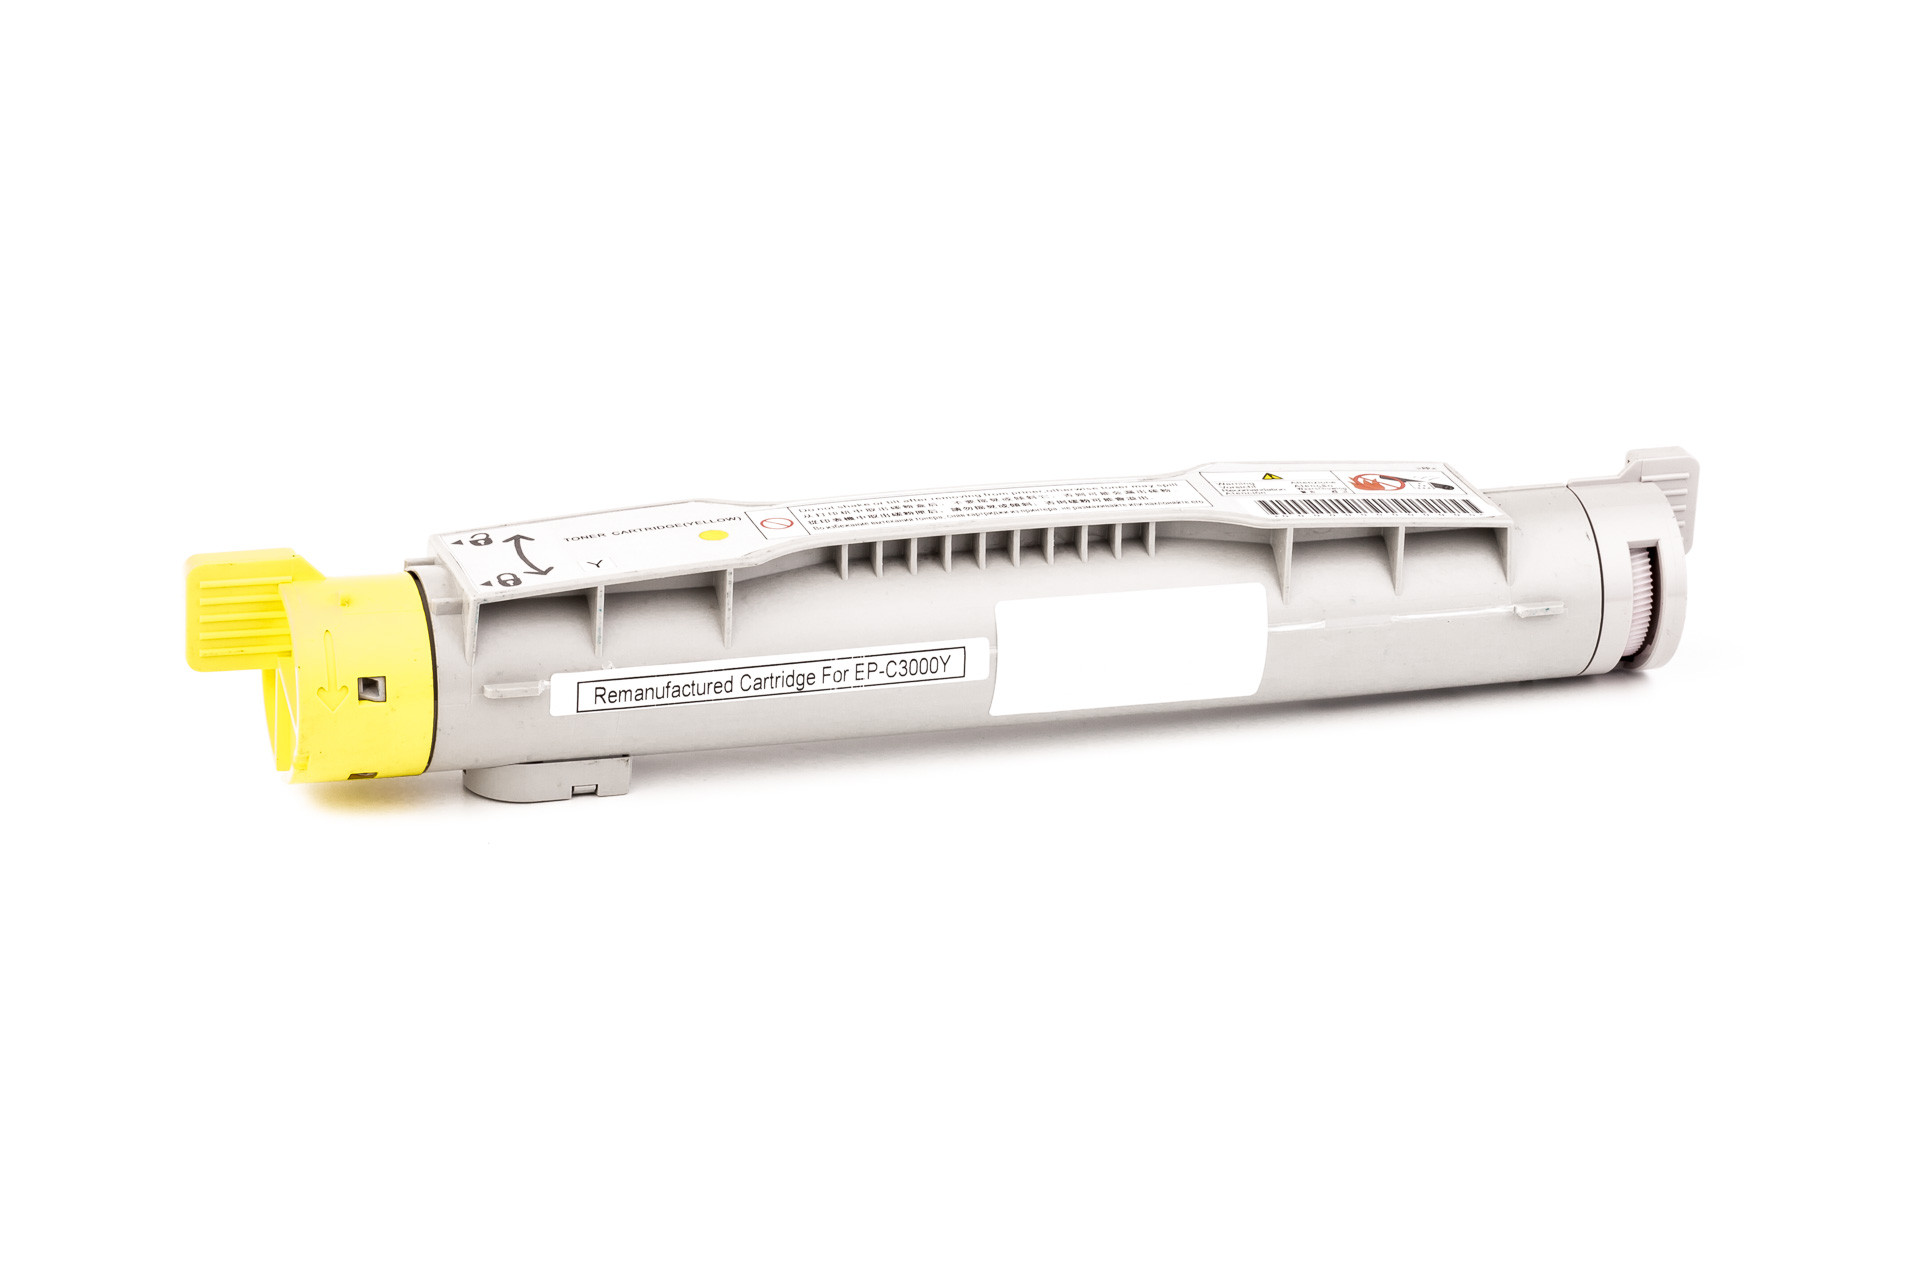 Cartucho de toner (alternativo) compatible a Epson C13S050210/C 13 S0 50210 - 0210 - Aculaser C 3000 amarillo